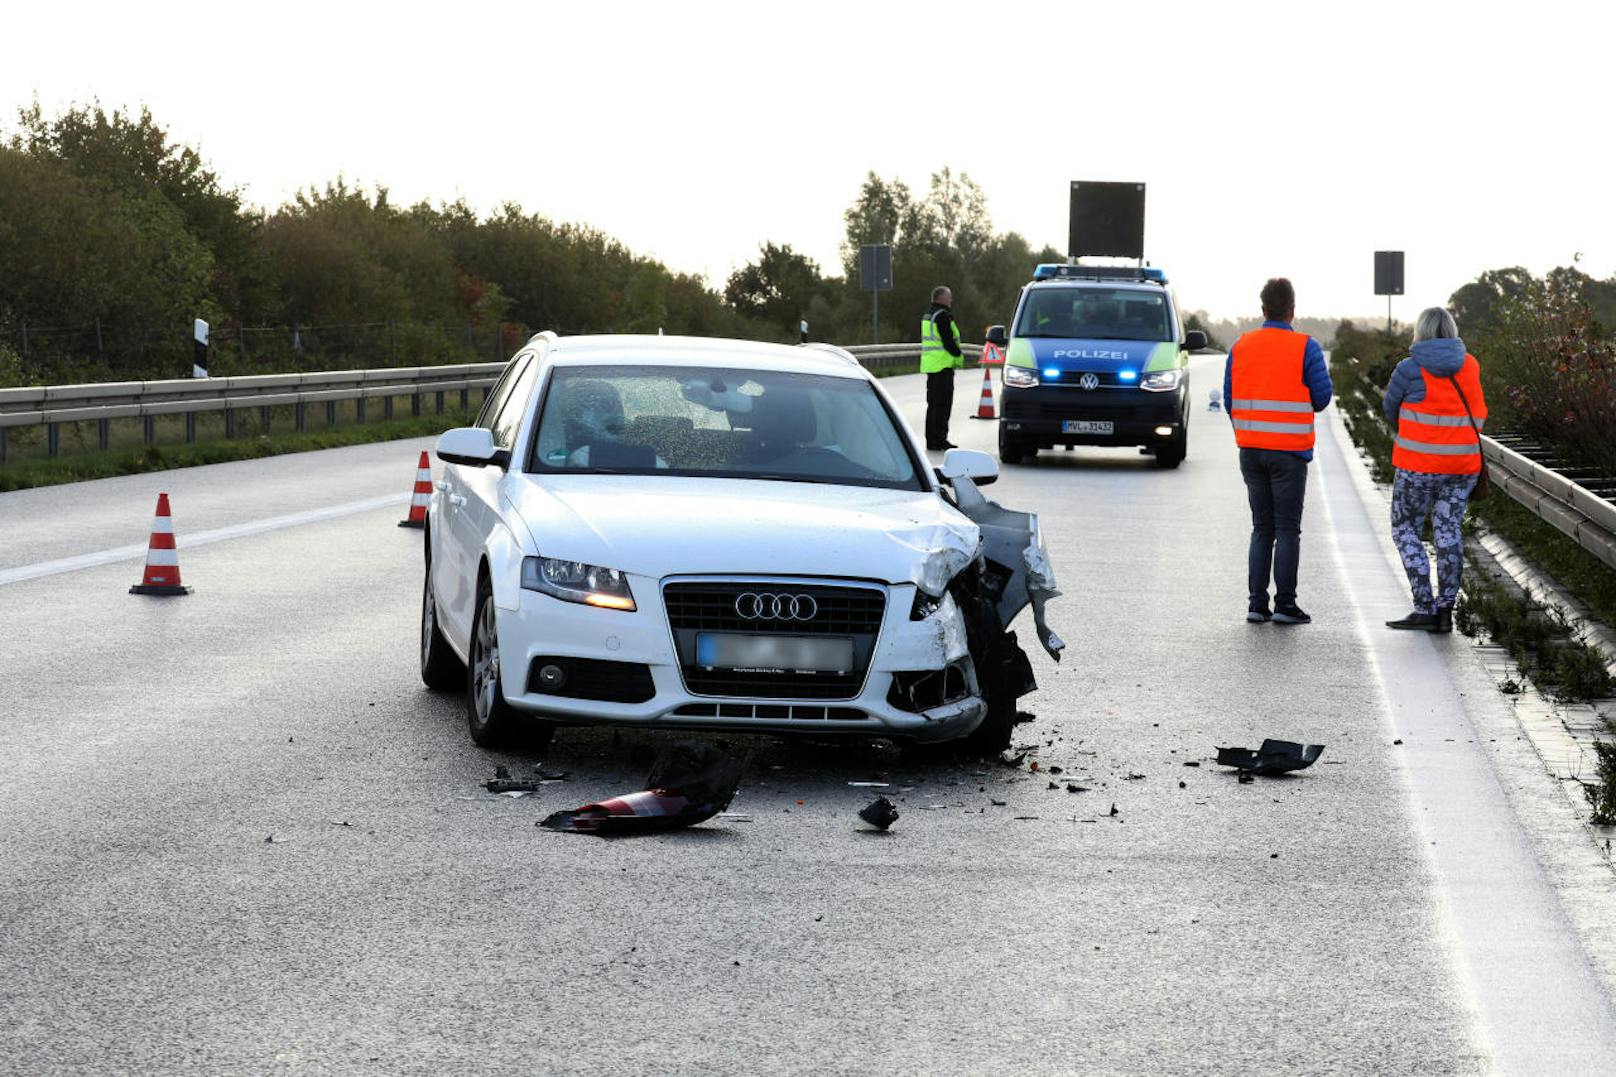 Ein "Geisterzebra" sorgte am 2. Oktober 2019 auf der deutschen Autobahn 20 bei Tessin (Mecklenburg-Vorpommern) für Chaos. Zwei Autos krachten ineinander, das Tier flüchtete. Weil es sich nicht einfangen ließ, wurde es erschossen.